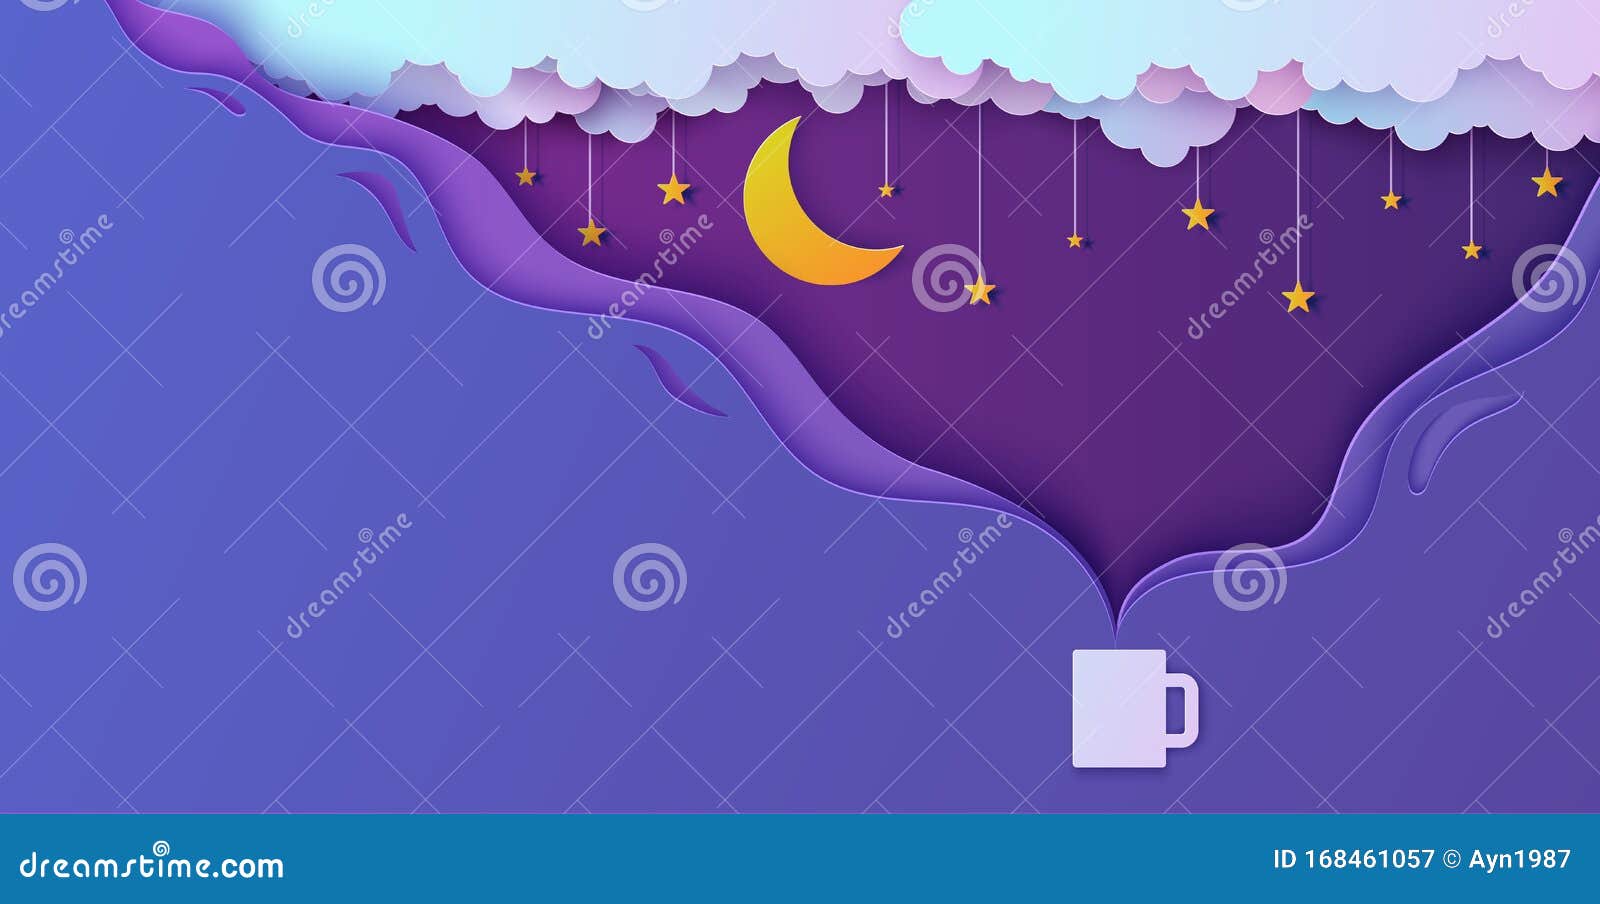 Night Sky in Paper Cut Style - Hot Drink Cup Steam Cùng thư giãn với tách đồ uống nóng và ngắm nhìn bầu trời đêm trong kiểu dáng phác thảo giấy tuyệt đẹp. Hình ảnh đầy màu sắc, trẻ trung và đầy tinh tế sẽ khiến bạn cảm thấy thư giãn và ấm áp vào những đêm giá rét.